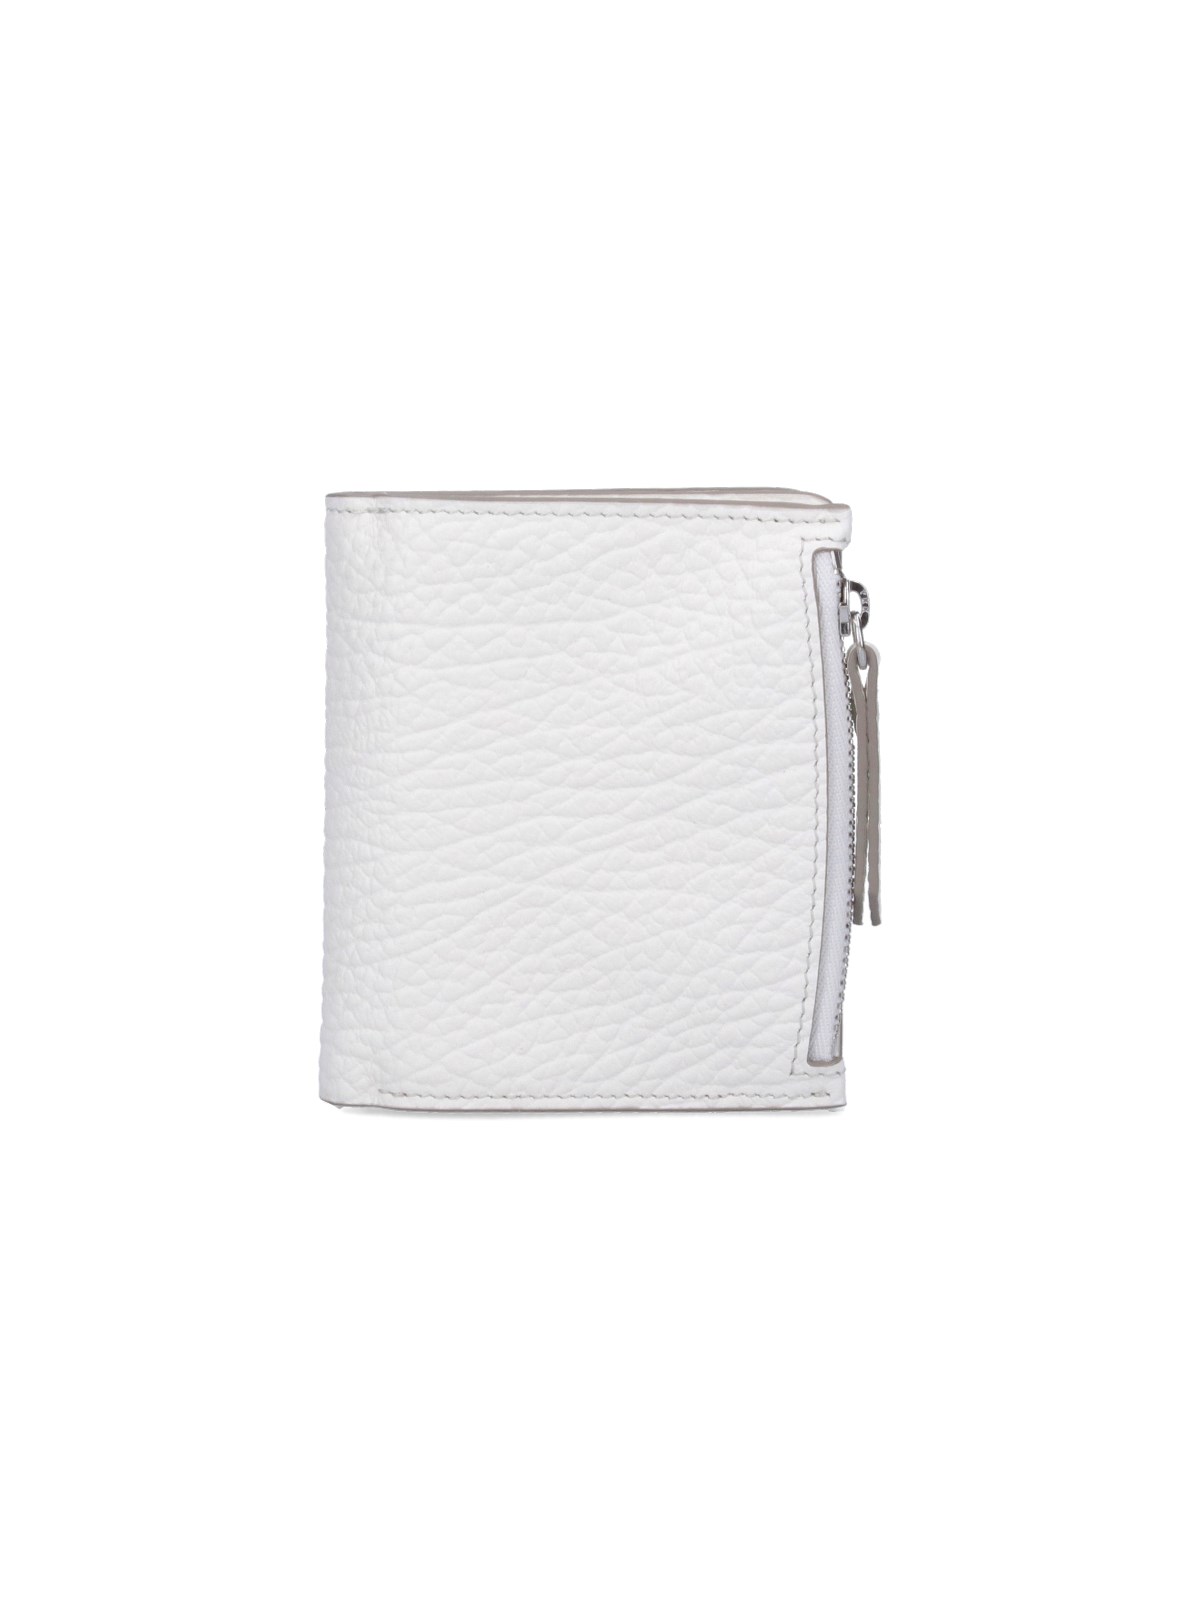 Maison Margiela "four Stitches" Wallet In White